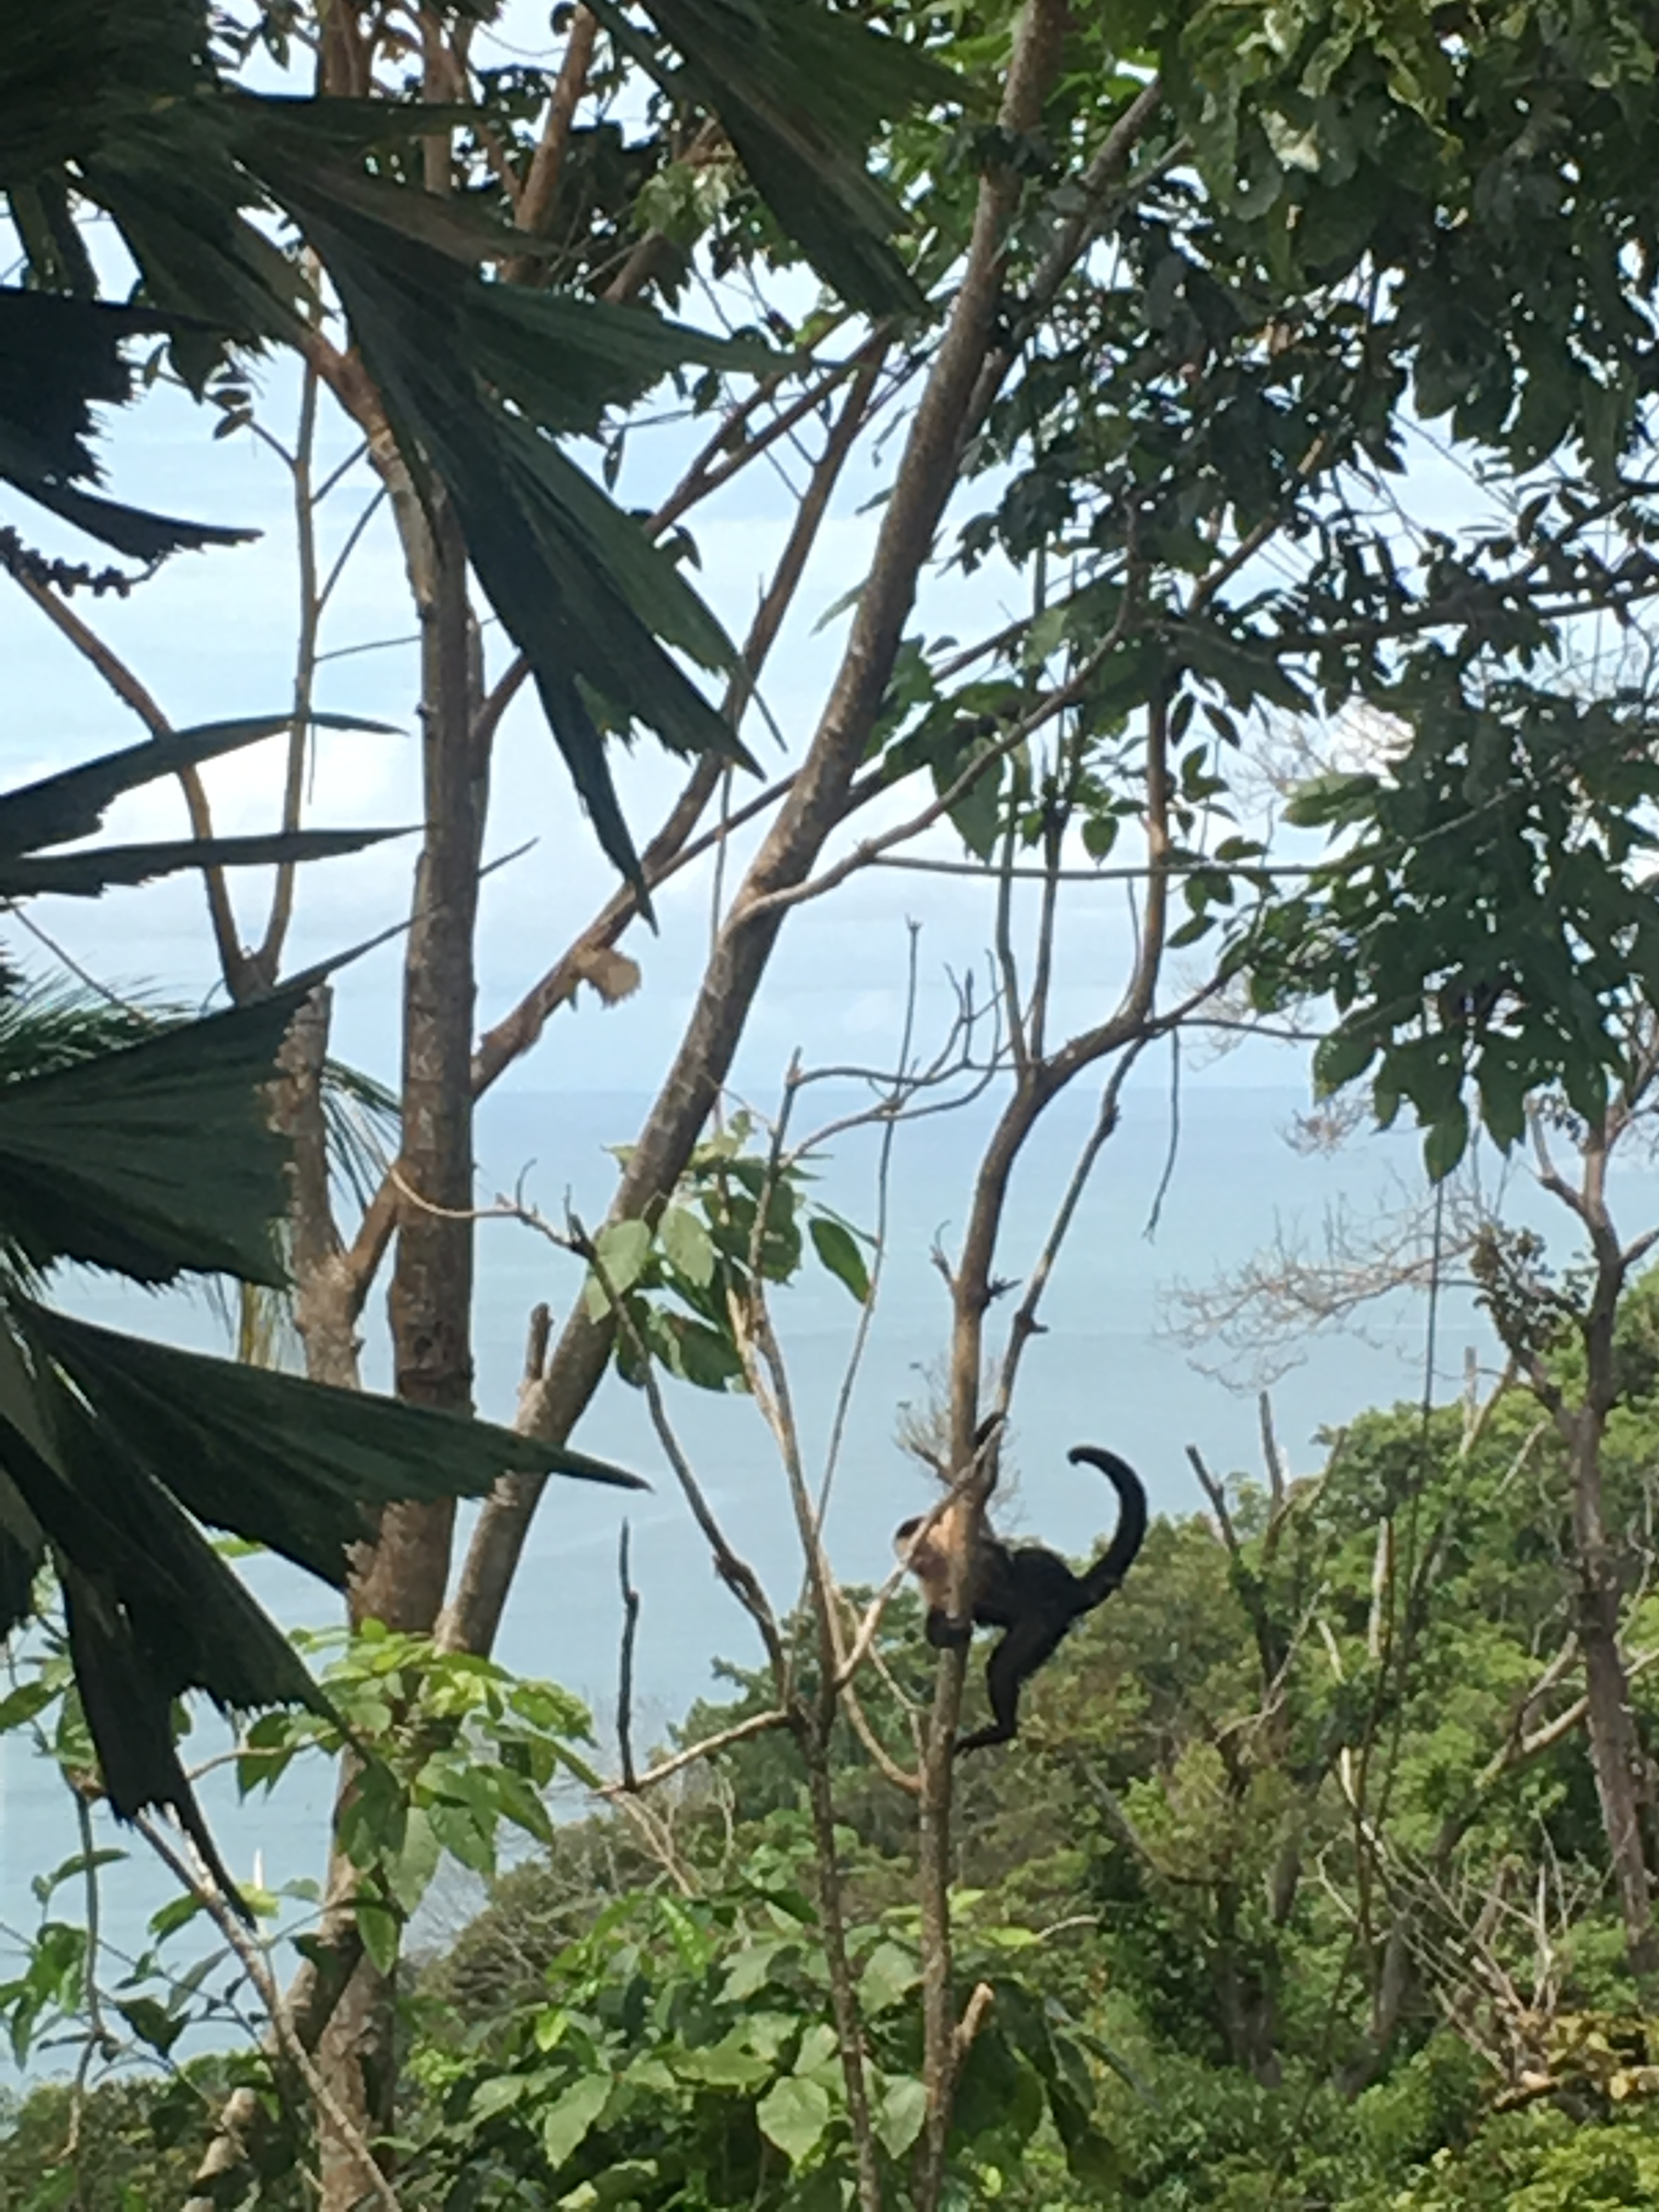 Capuchin monkey hanging on